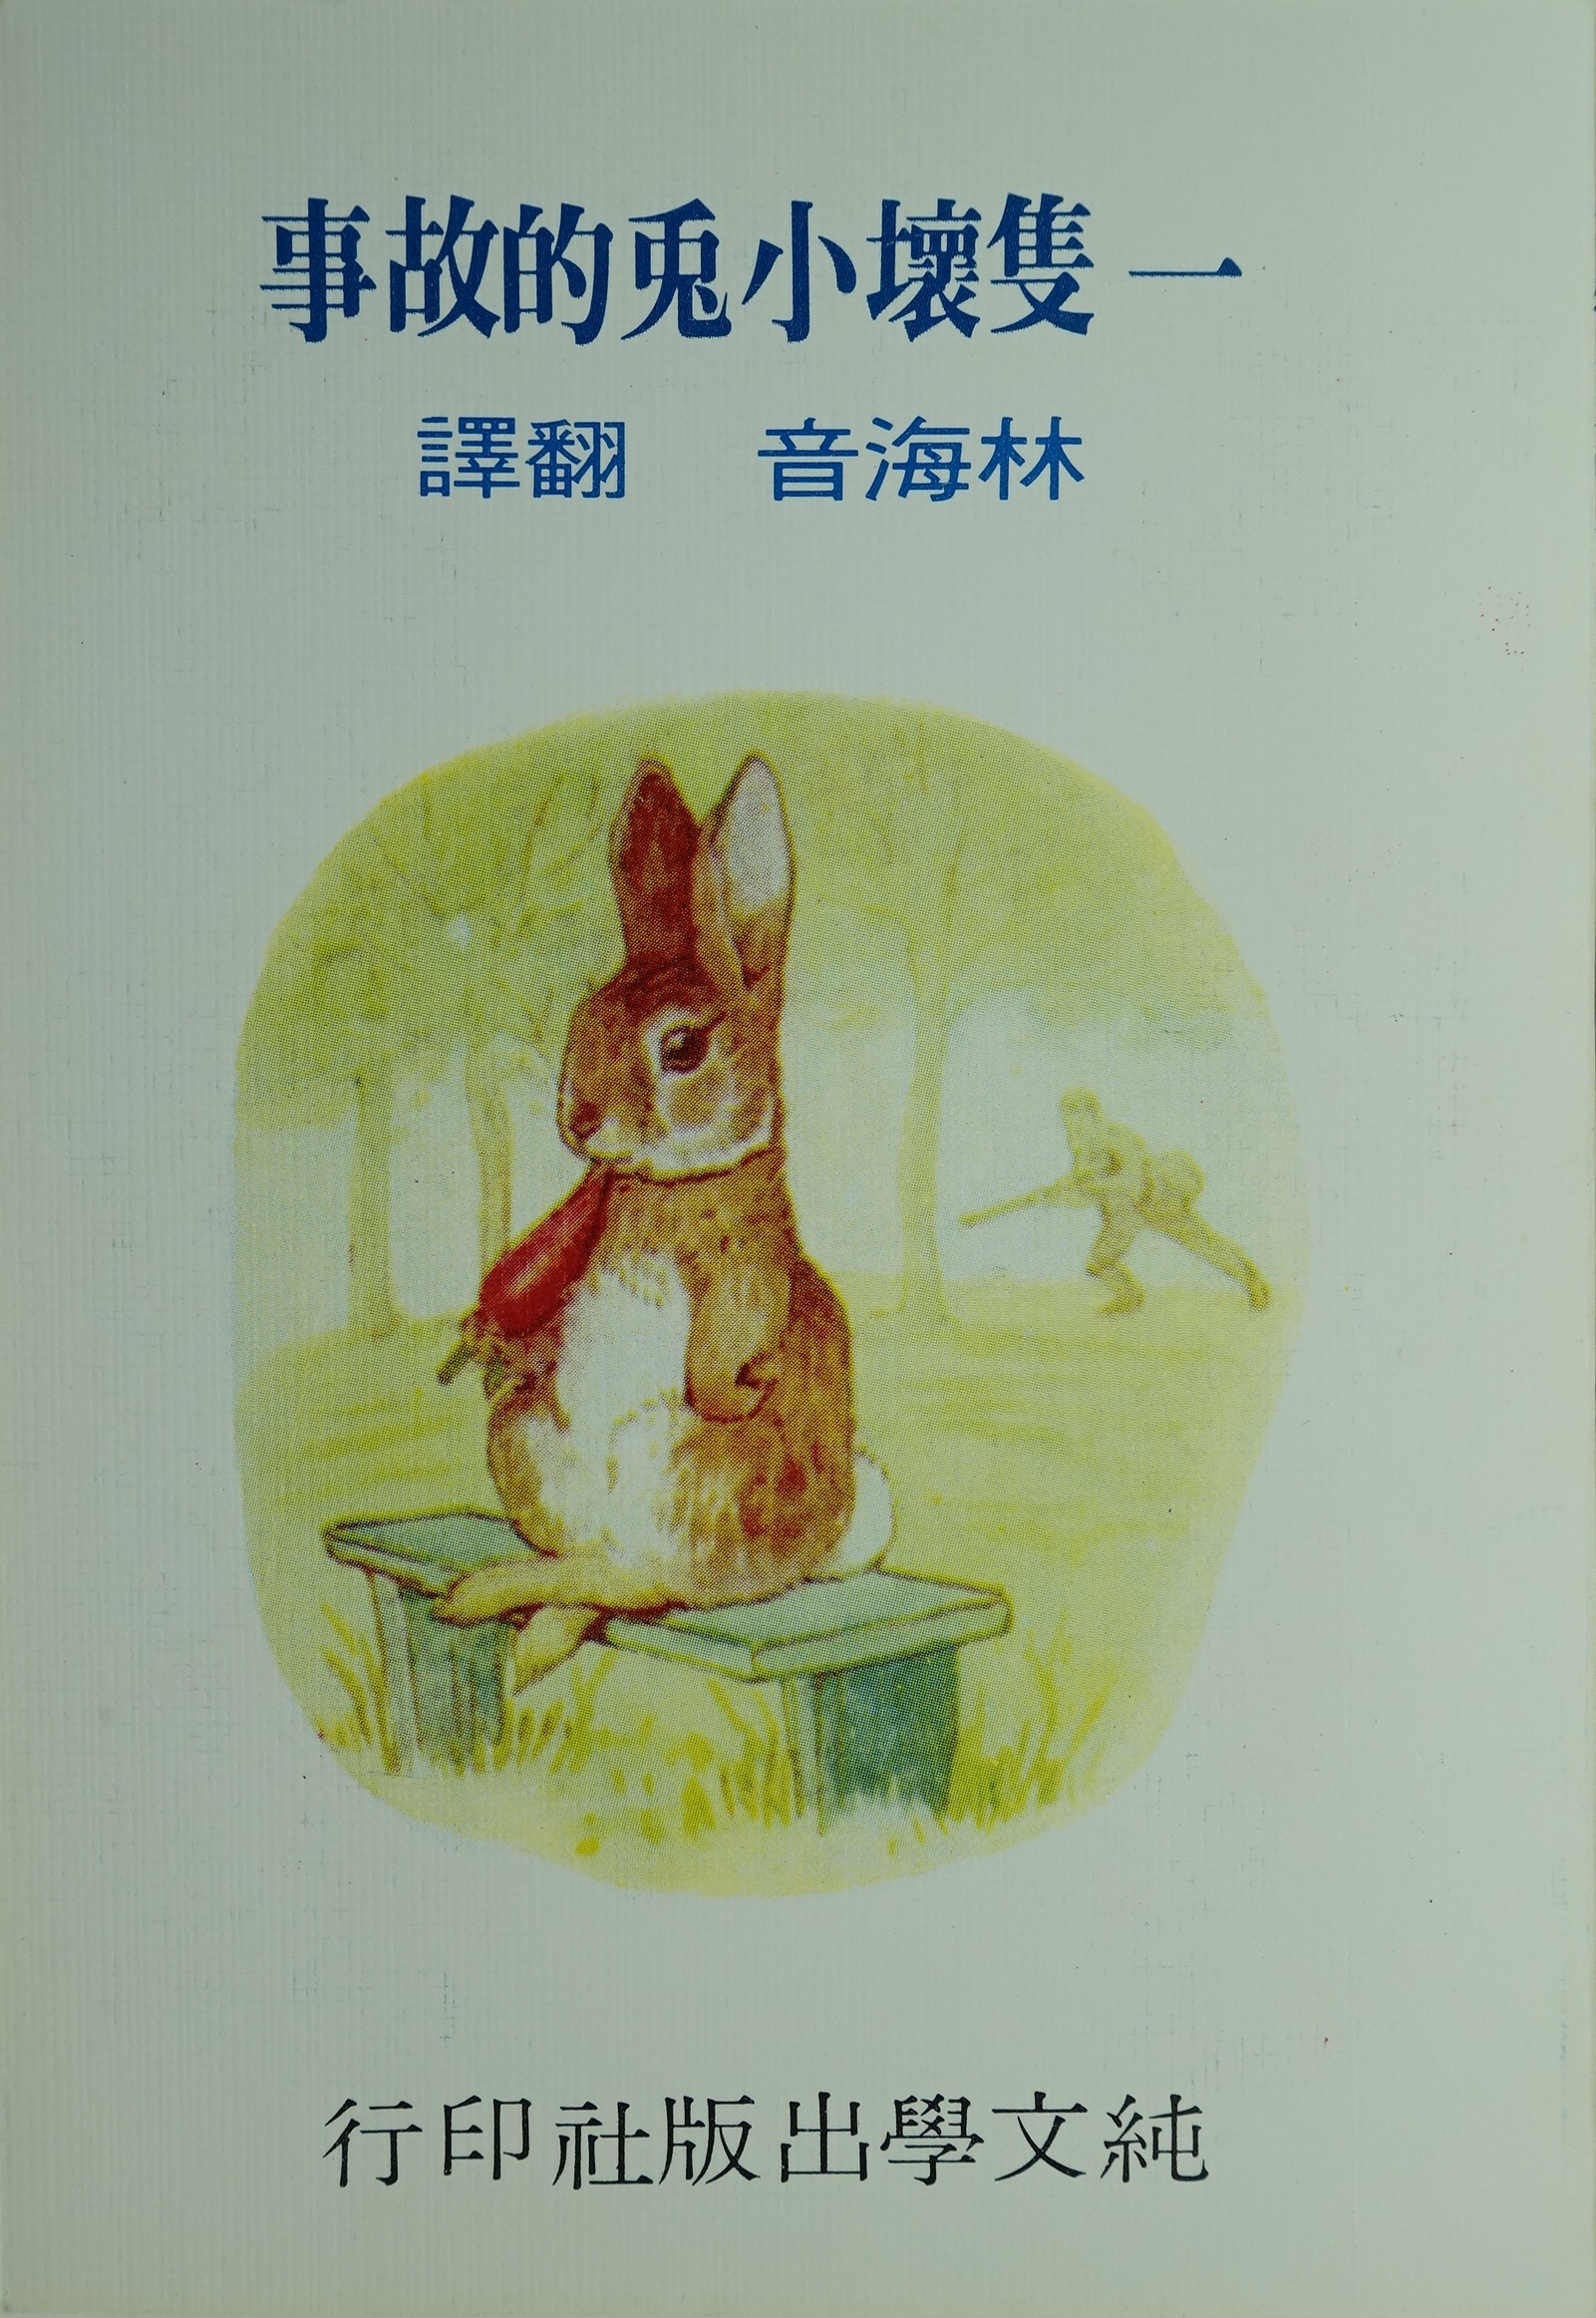 《一隻壞小兔的故事》